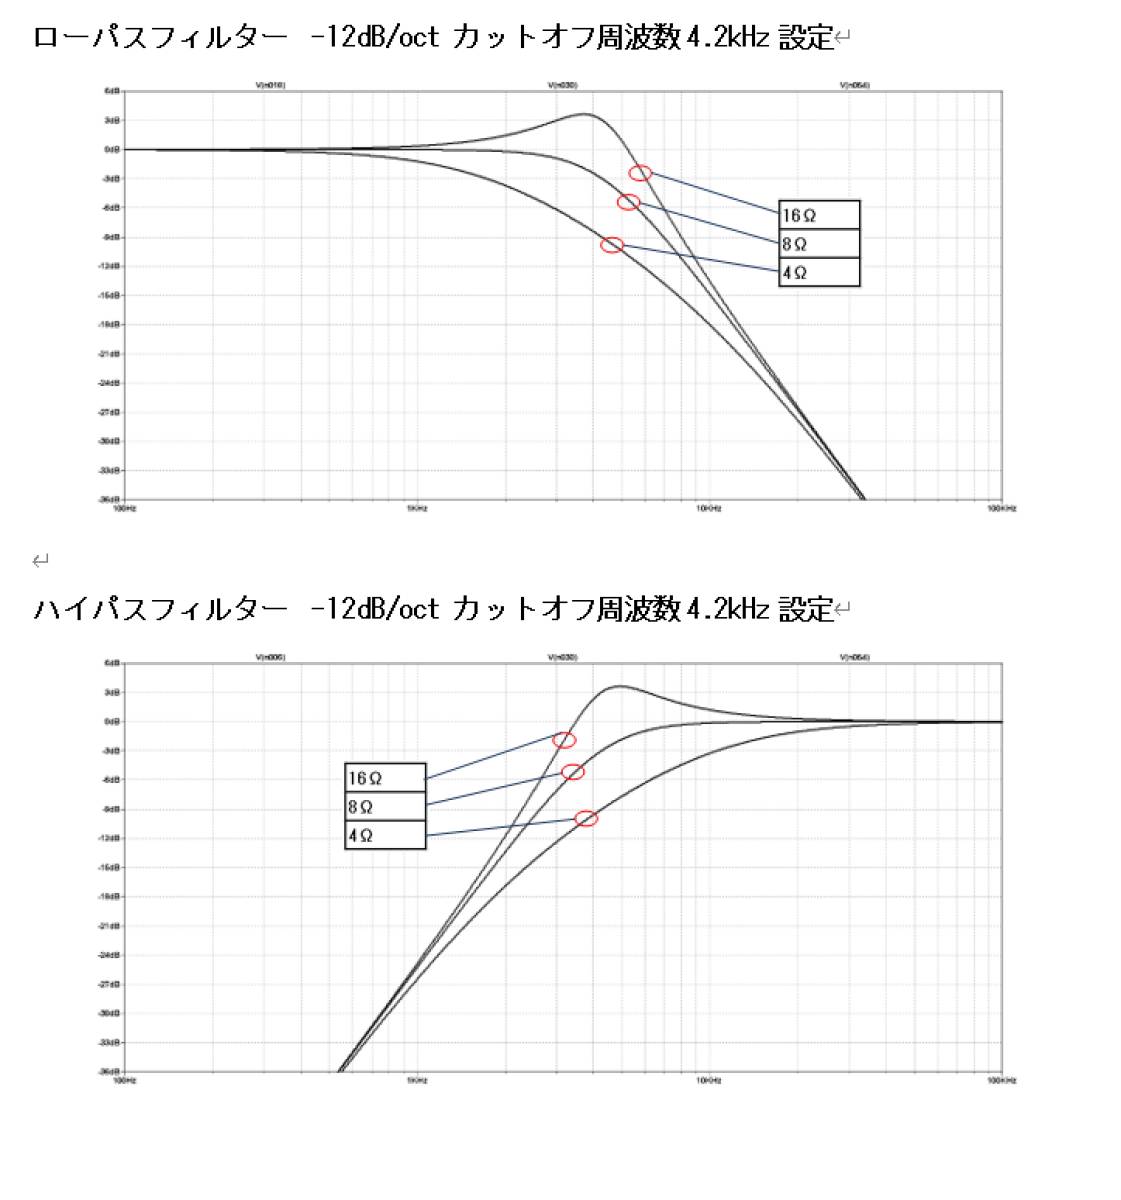 カットオフ周波数選択式ローパス/ハイパスフィルター(2台セット)_シミュレーション結果例2